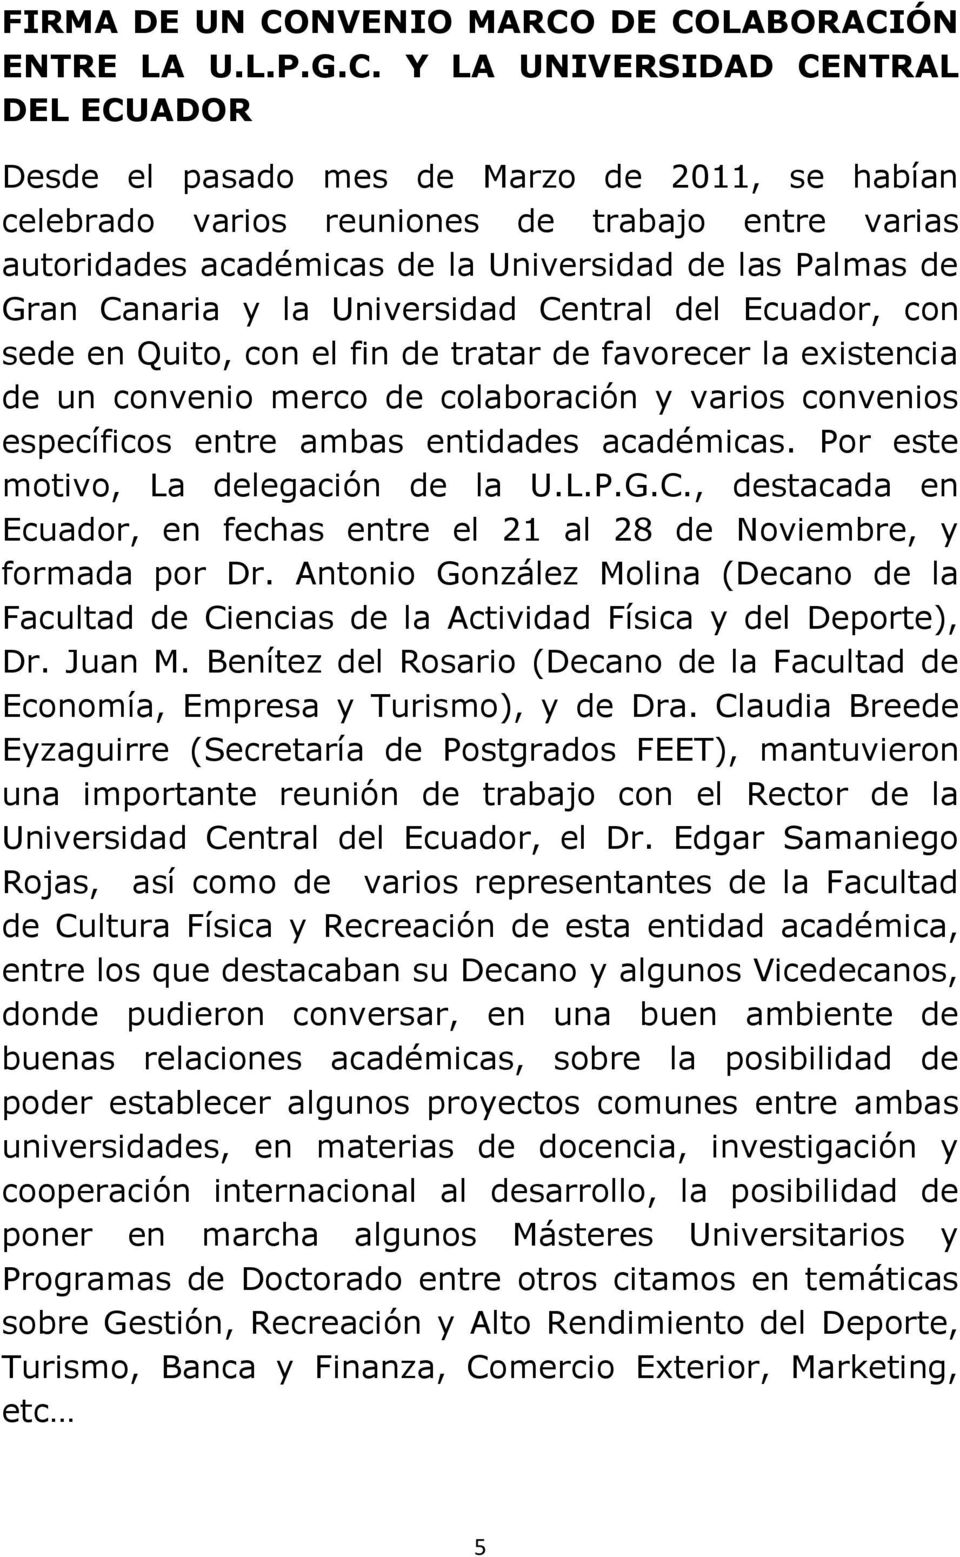 DE COLABORACIÓN ENTRE LA U.L.P.G.C. Y LA UNIVERSIDAD CENTRAL DEL ECUADOR Desde el pasado mes de Marzo de 2011, se habían celebrado varios reuniones de trabajo entre varias autoridades académicas de